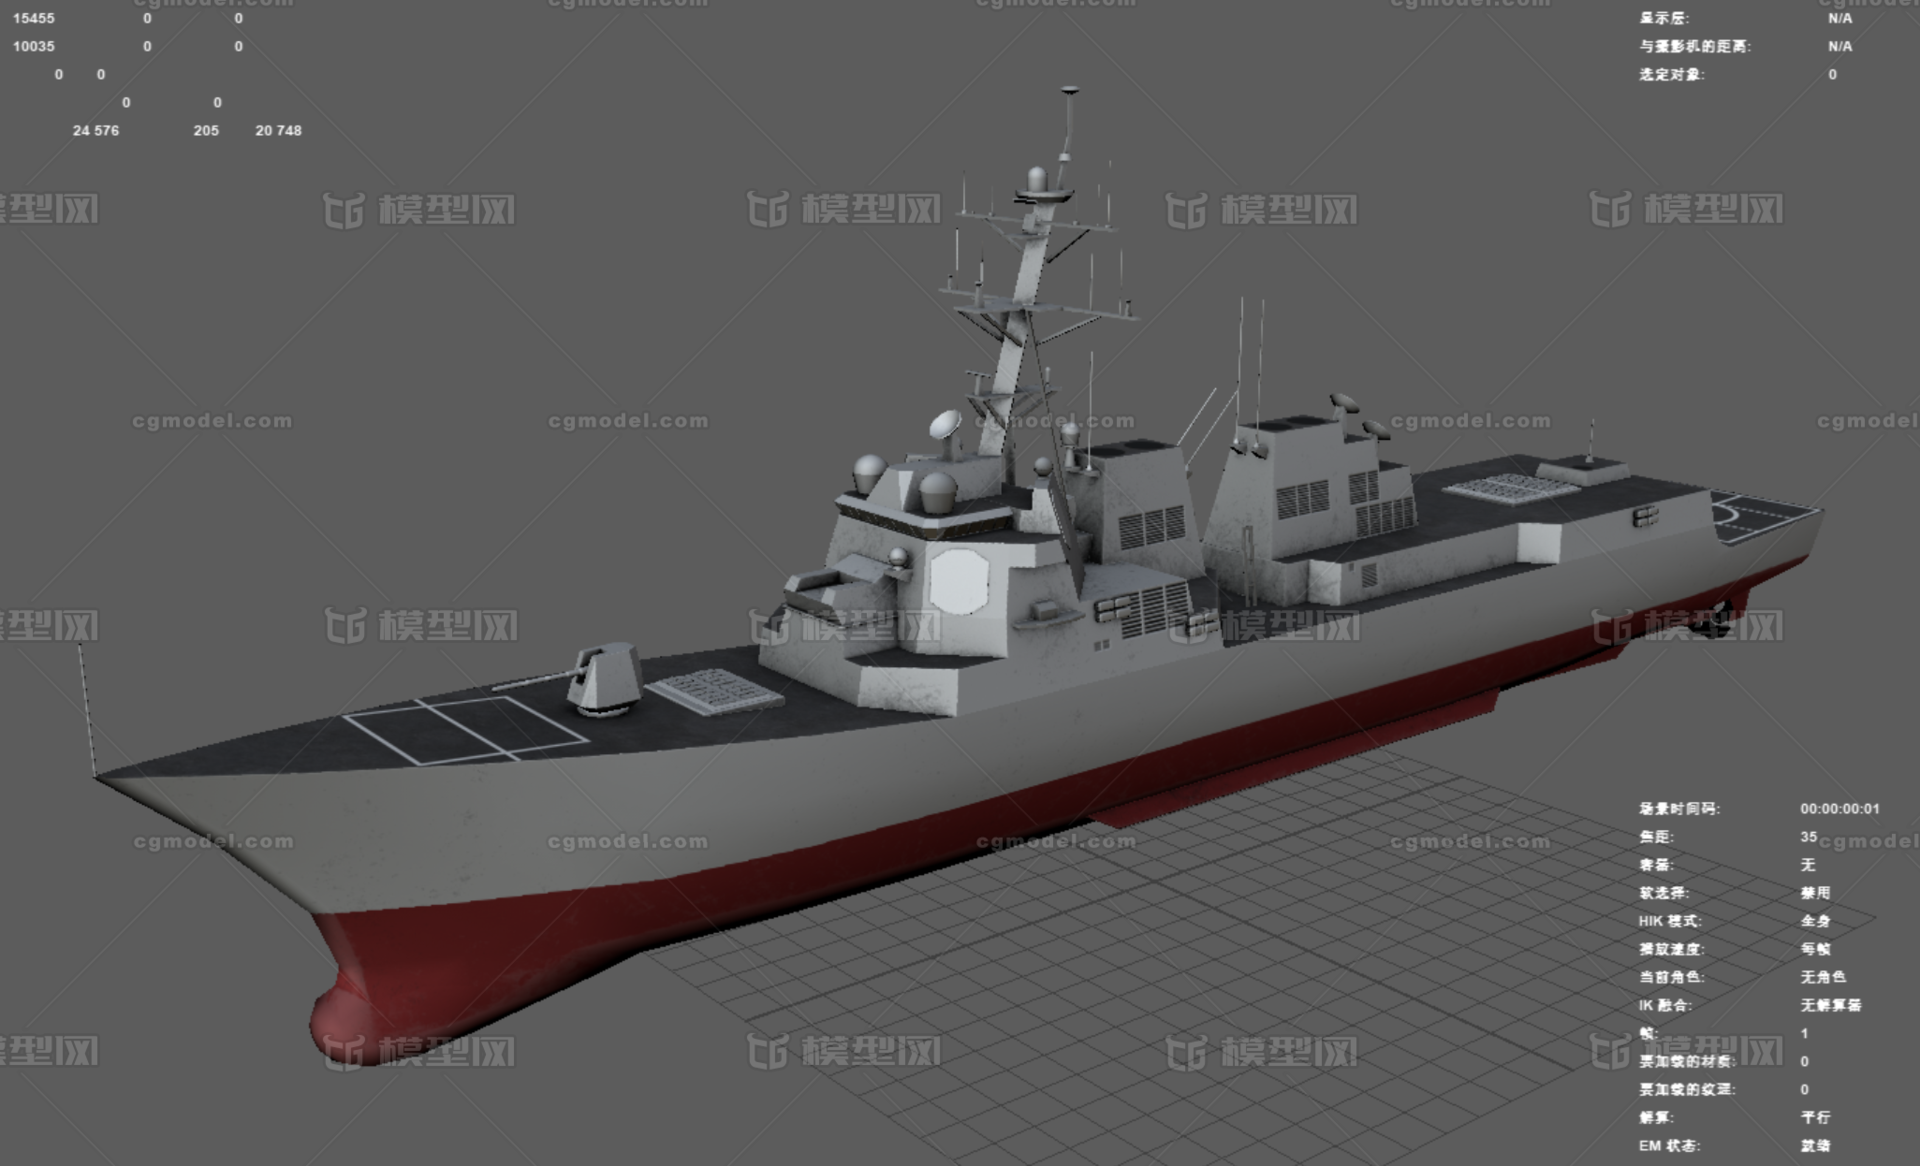 阿利伯克级驱逐舰_438008440作品_船艇军舰_cg模型网